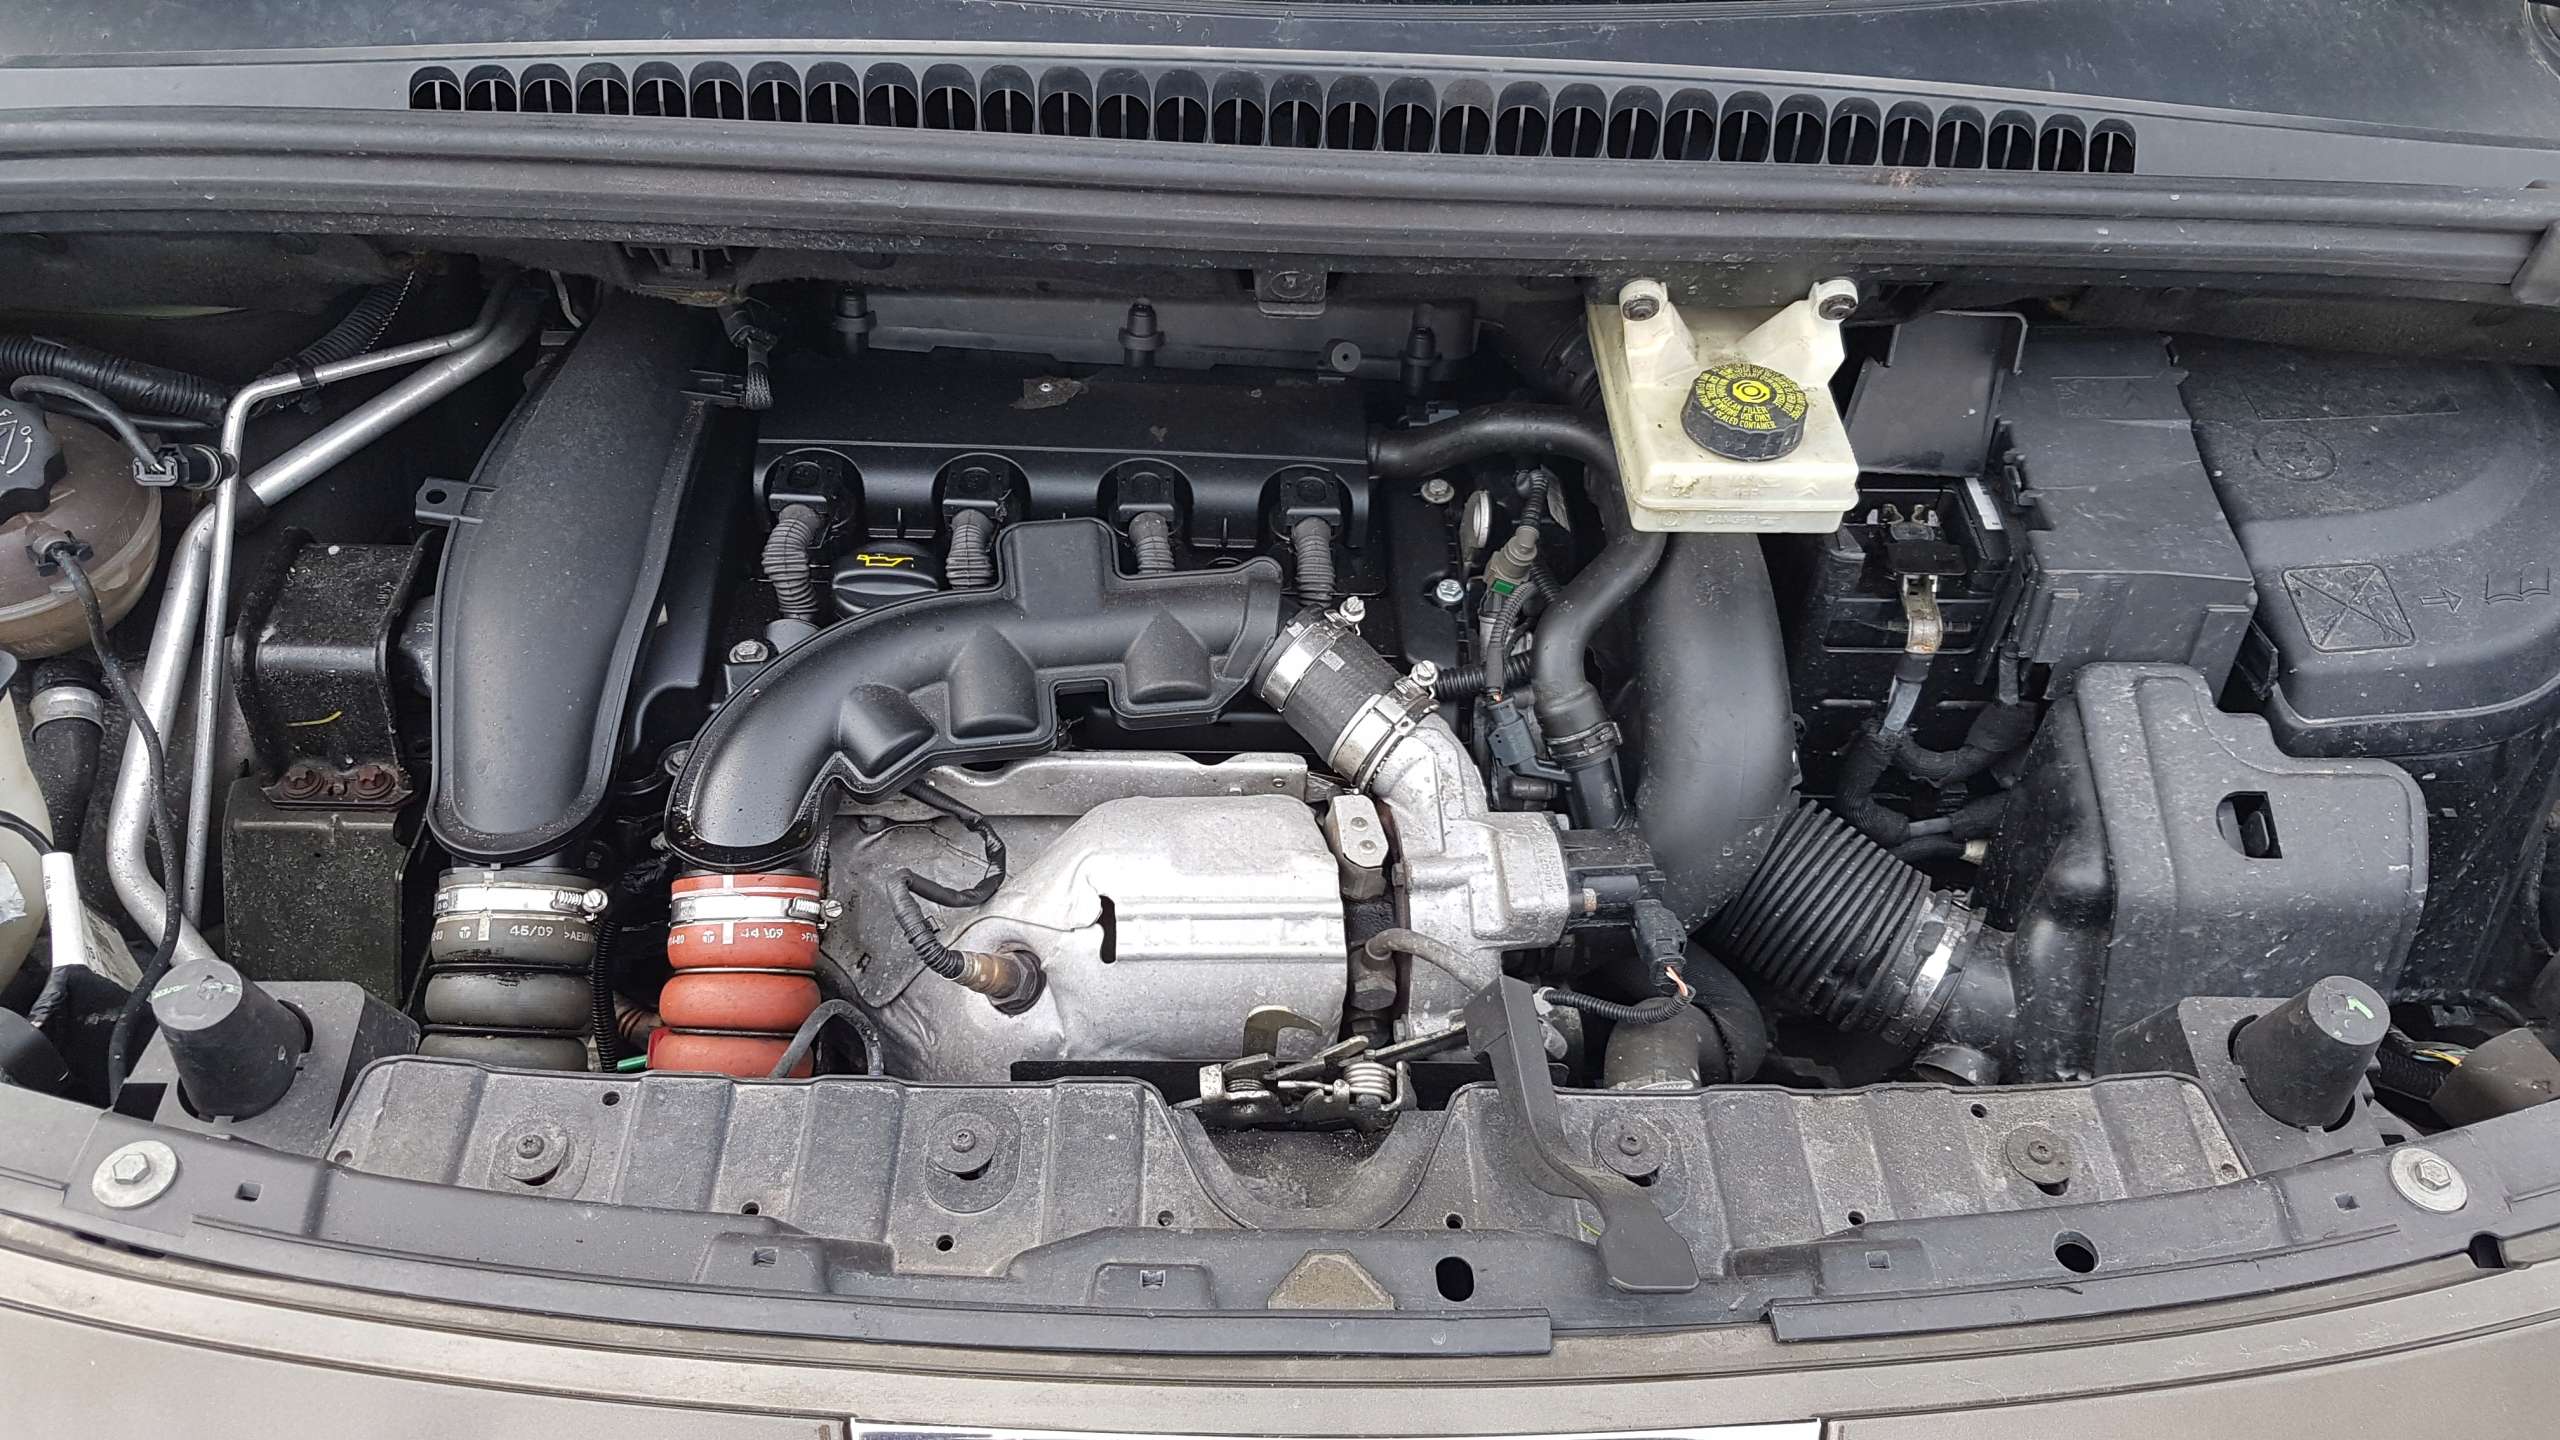 Peugeot 3008 двигатель. Двигатель Пежо 3008. Пежо 3008 двигатель 1.6. Двигатель Пежо 3008 1.6 турбо. Мотор Пежо 3008 дизель 2,0.